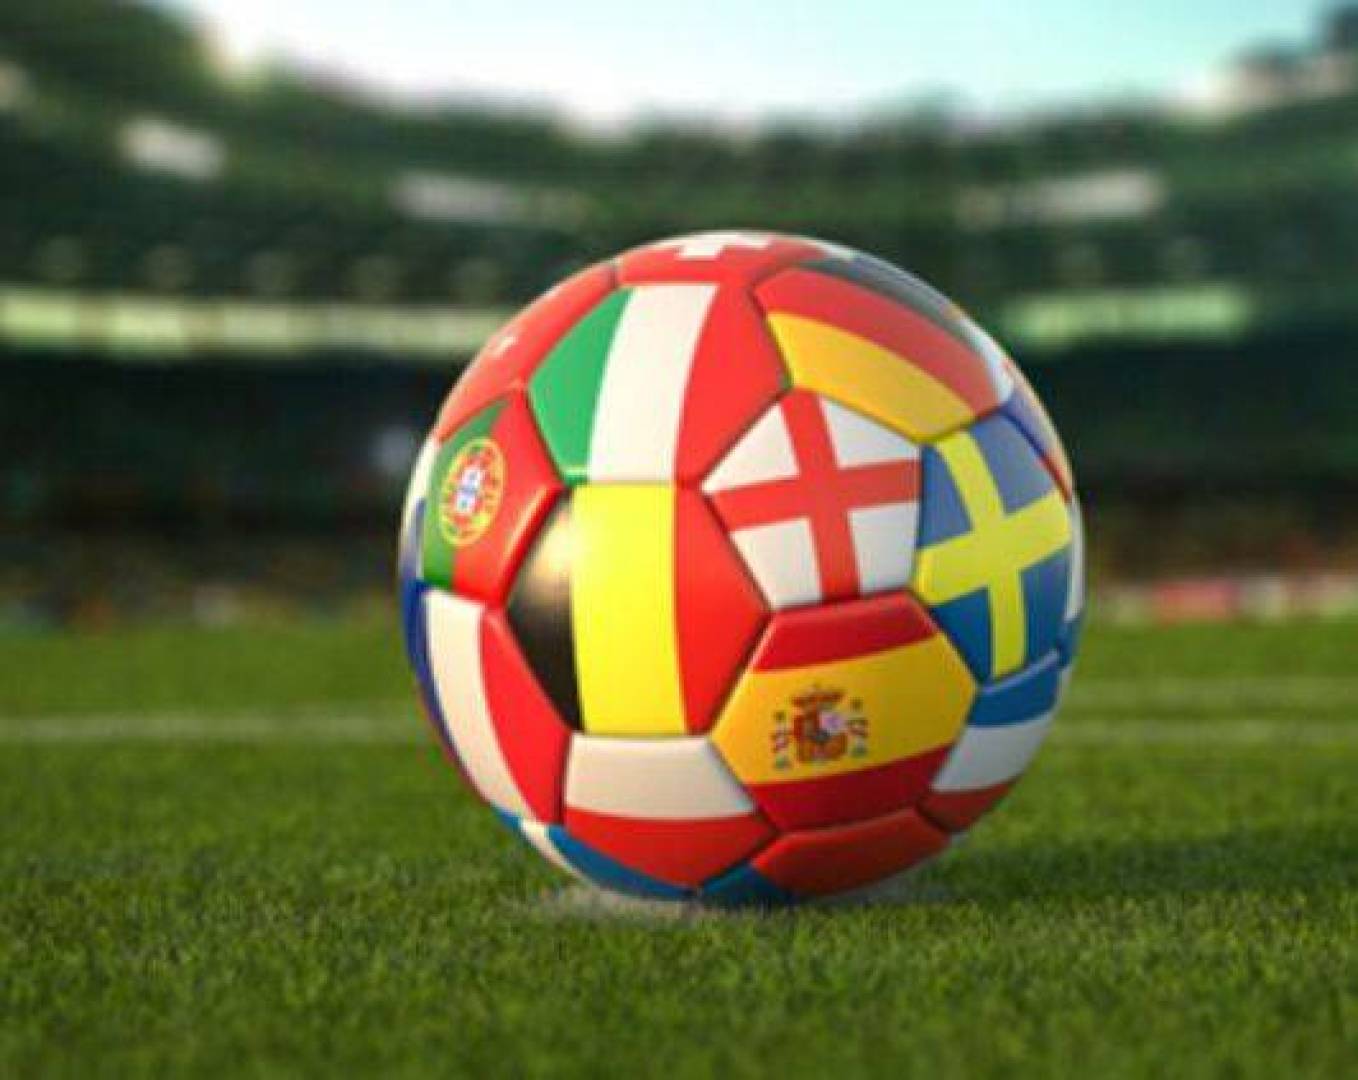 القنوات الناقلة لمباريات اليوم الثلاثاء في الملاعب العالمية وموعدها بالتفصيل